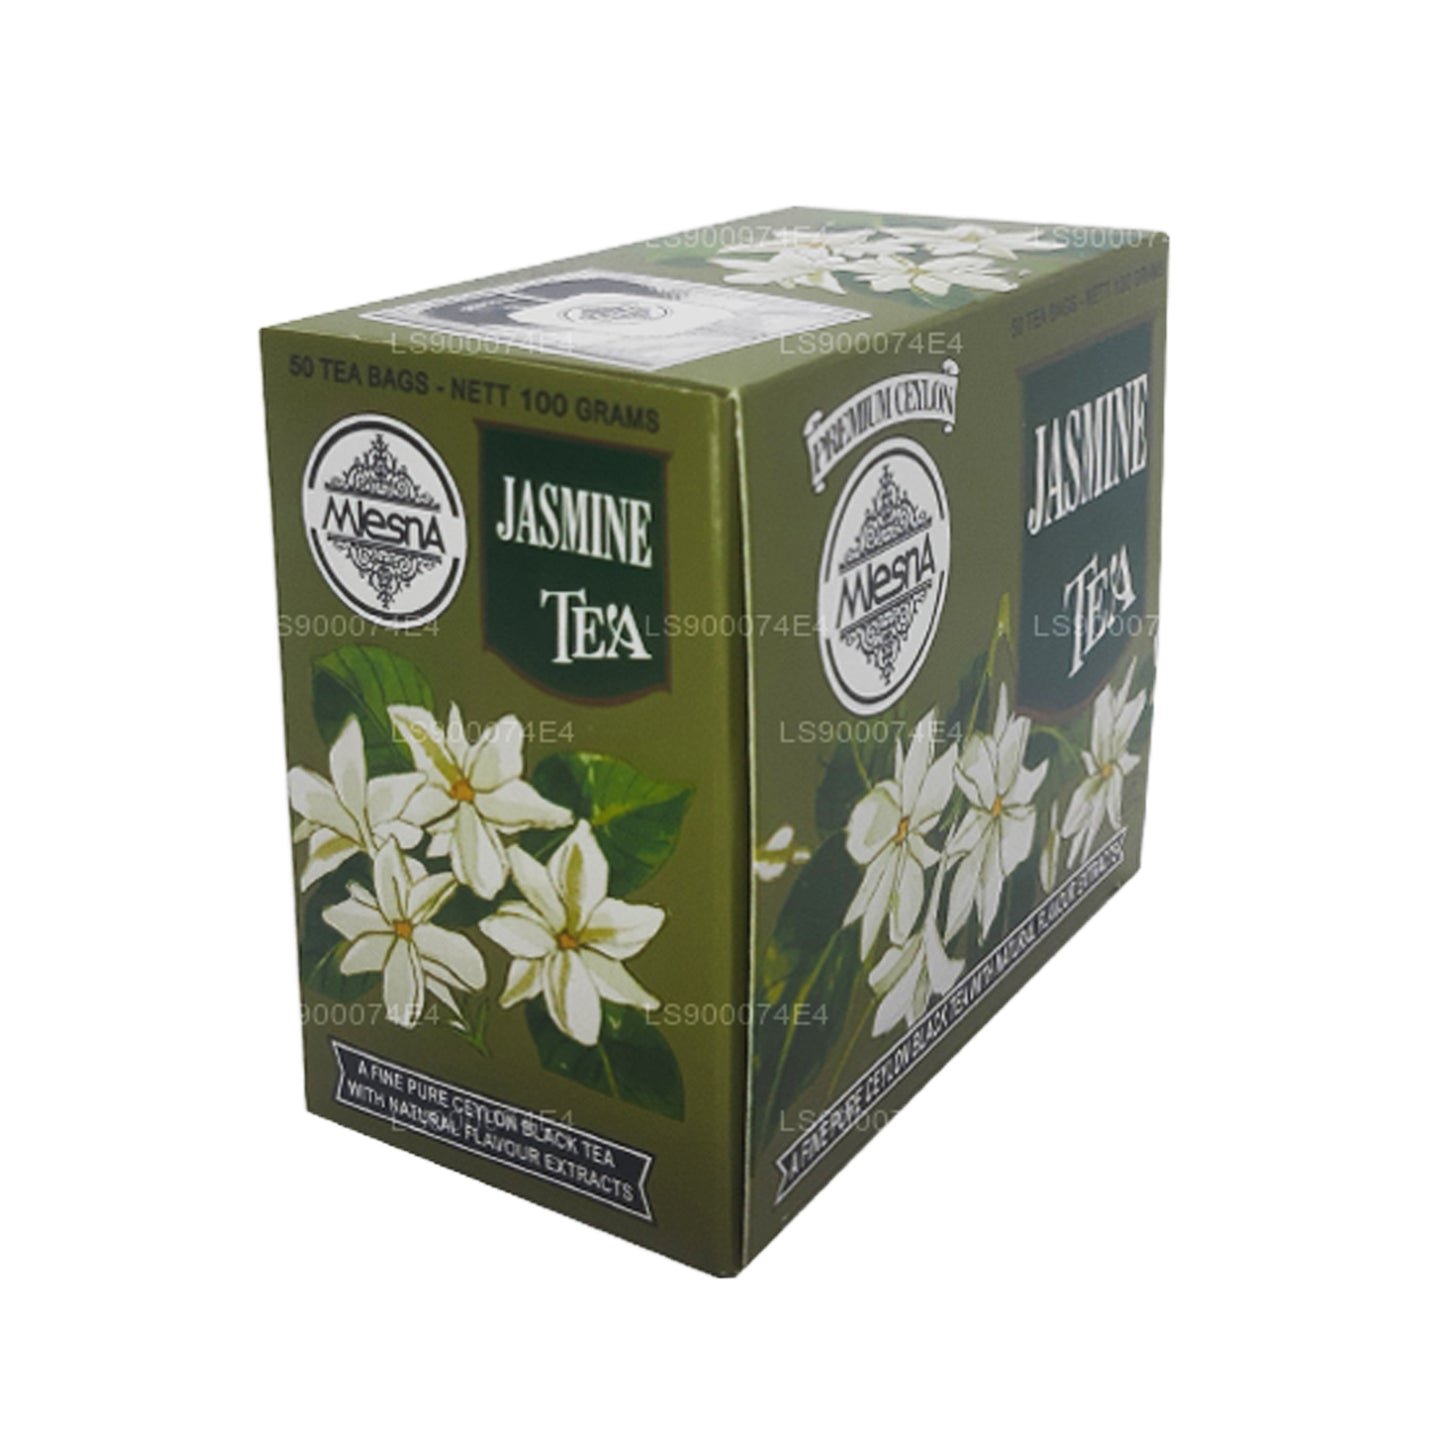 Mlesna Jasmine grøn te (100 g) 50 teposer